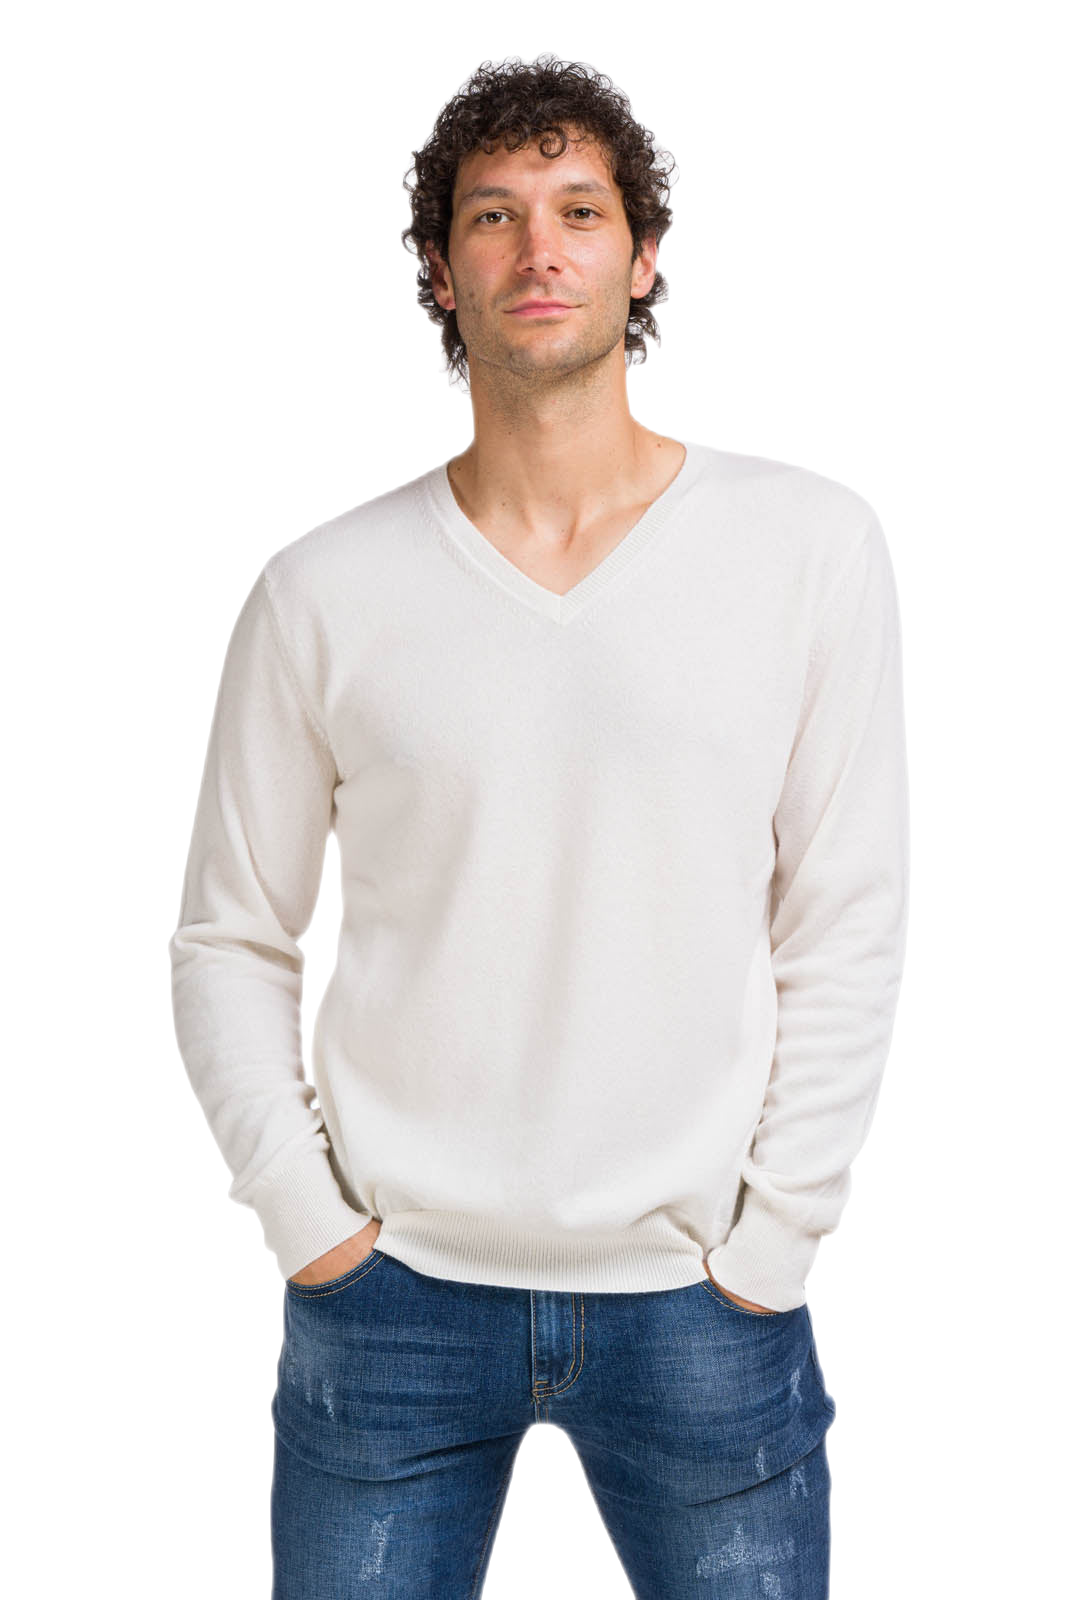 maglione cashmere uomo scollo a v bianco